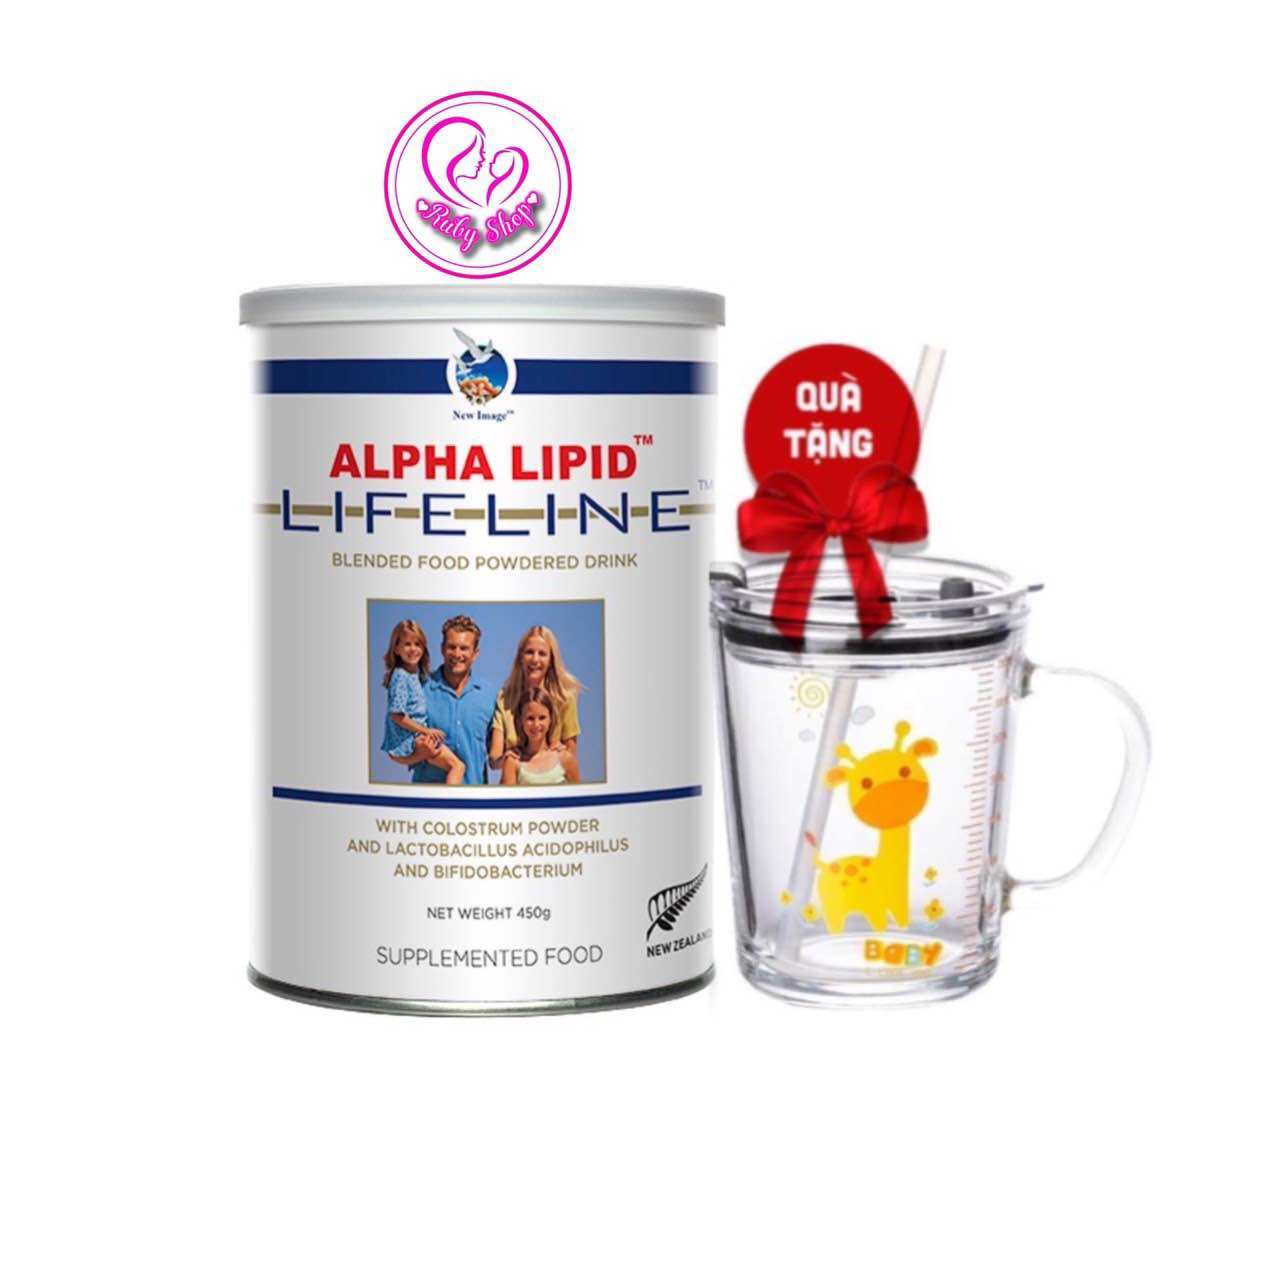 Sữa non Alpha Lipid lon 450g chính hãng nhập khẩu New Zealand hỗ trợ bổ sung dinh dưỡng cho cả gia đình